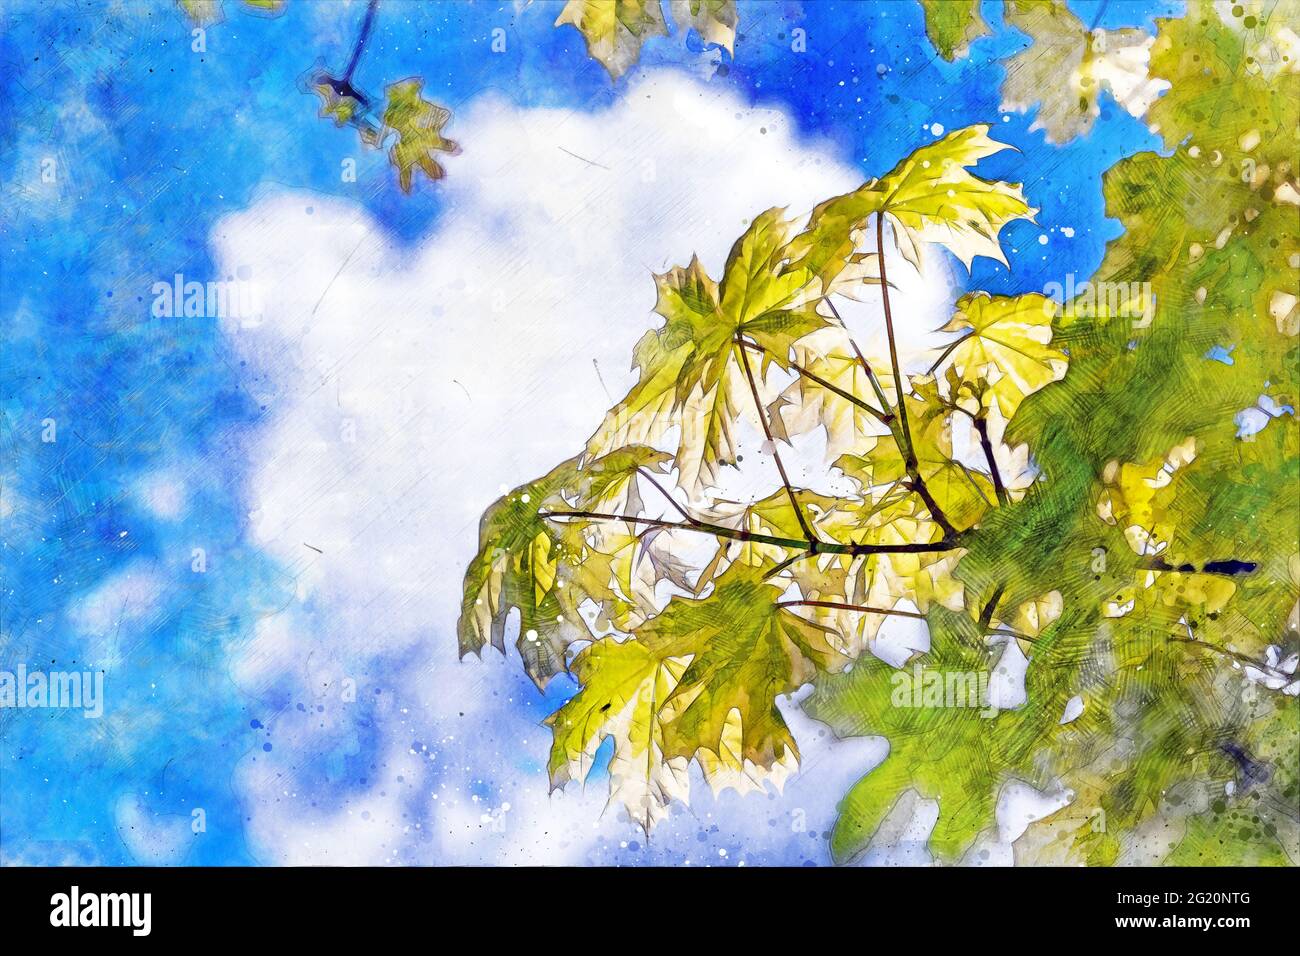 Ahornbaum mit Ästen mit grünen und gelben Blättern mit Himmel im Hintergrund - digital generiertes Bild. Stockfoto